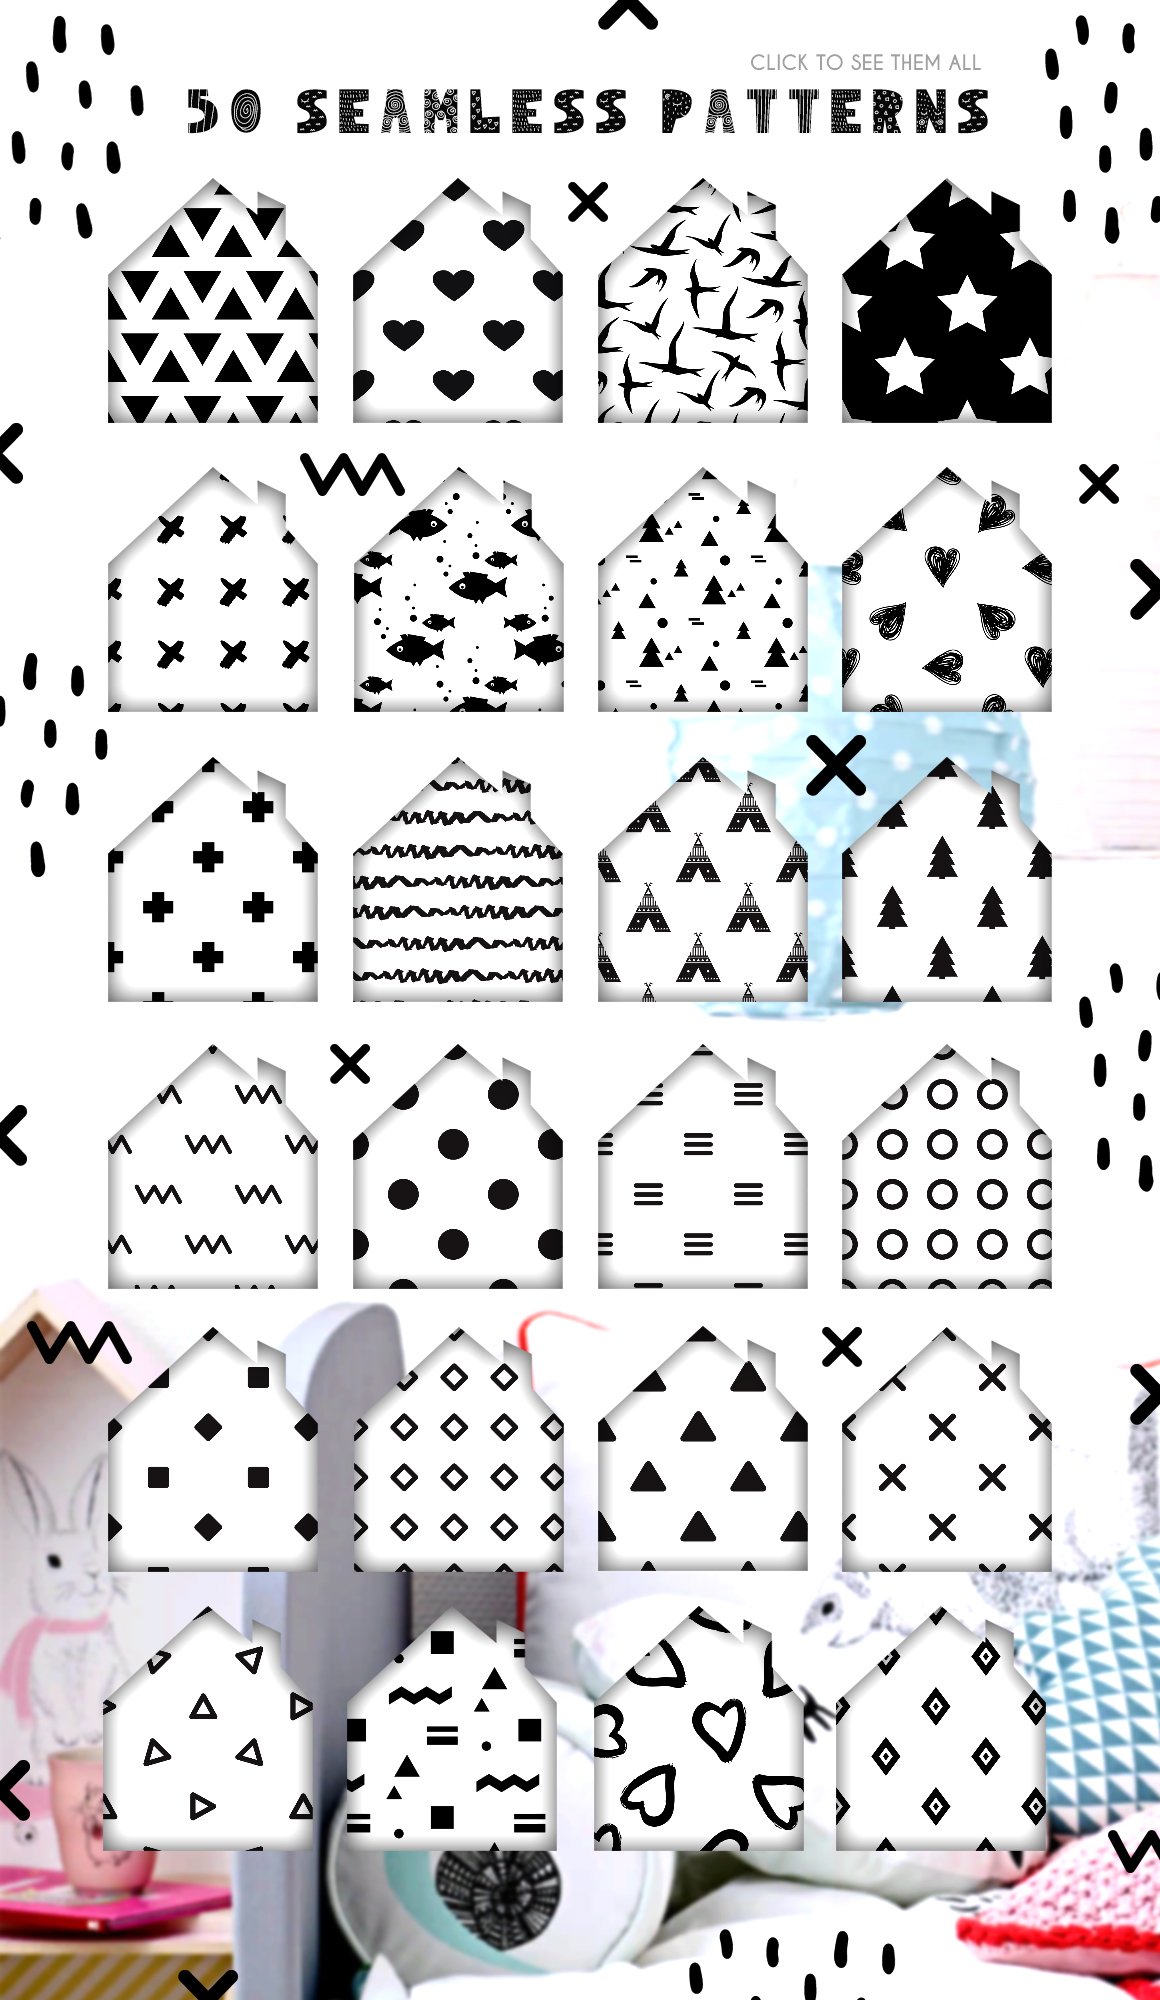 50款斯堪的纳维亚风格斑点几何动物矢量图集 50 Scandinavian Seamless Patterns插图1